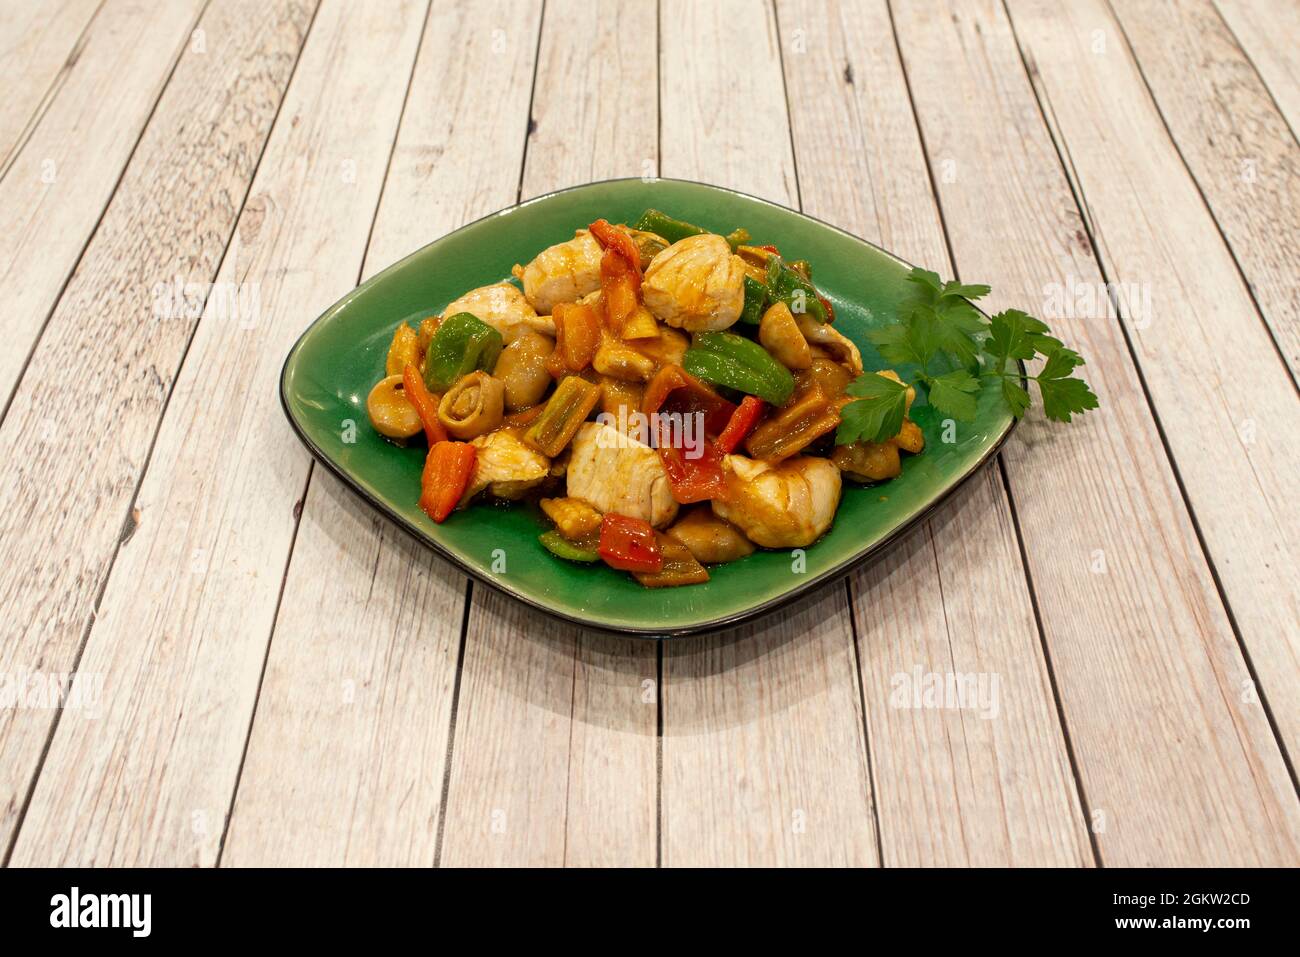 Thailändisches Chicken Curry Rezept mit Wok Sauteed Pilzen, Paprika und  Zwiebeln und frischer Petersilie Stockfotografie - Alamy